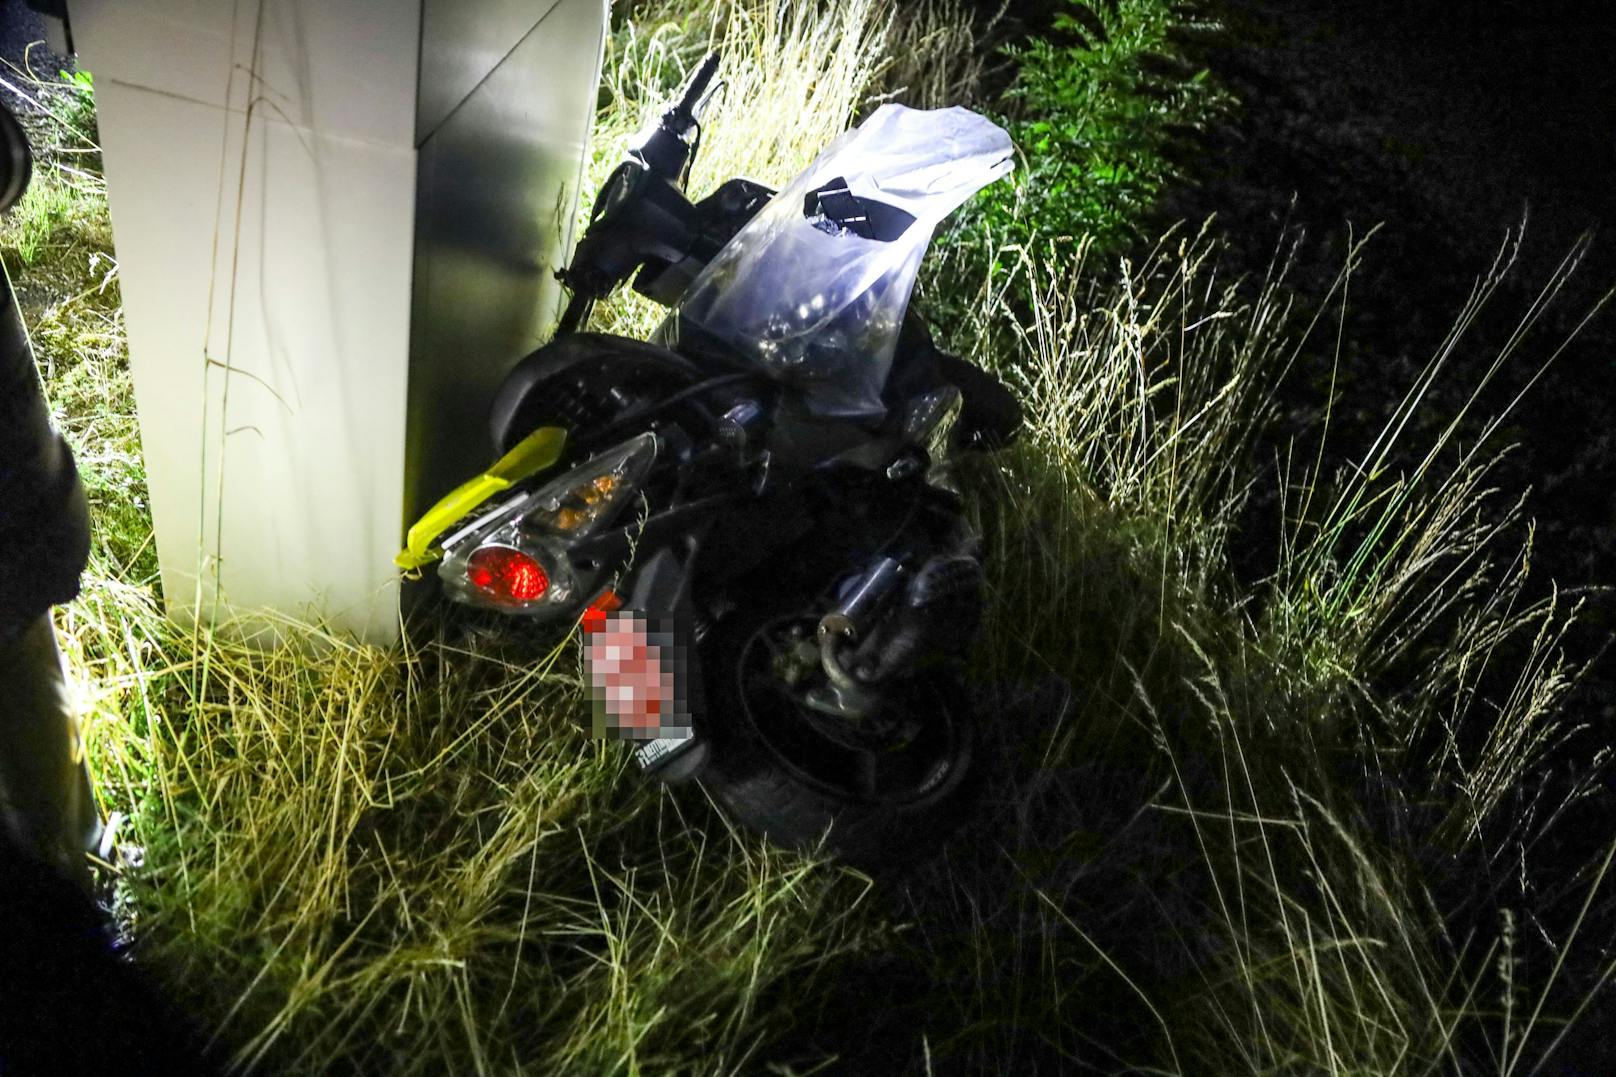 Ein schwerer Verkehrsunfall mit einem beteiligten Moped hat sich am späten Samstagabend in Ried im Traunkreis (Bezirk Kirchdorf an der Krems) ereignet. Dabei wurden zwei Personen verletzt.